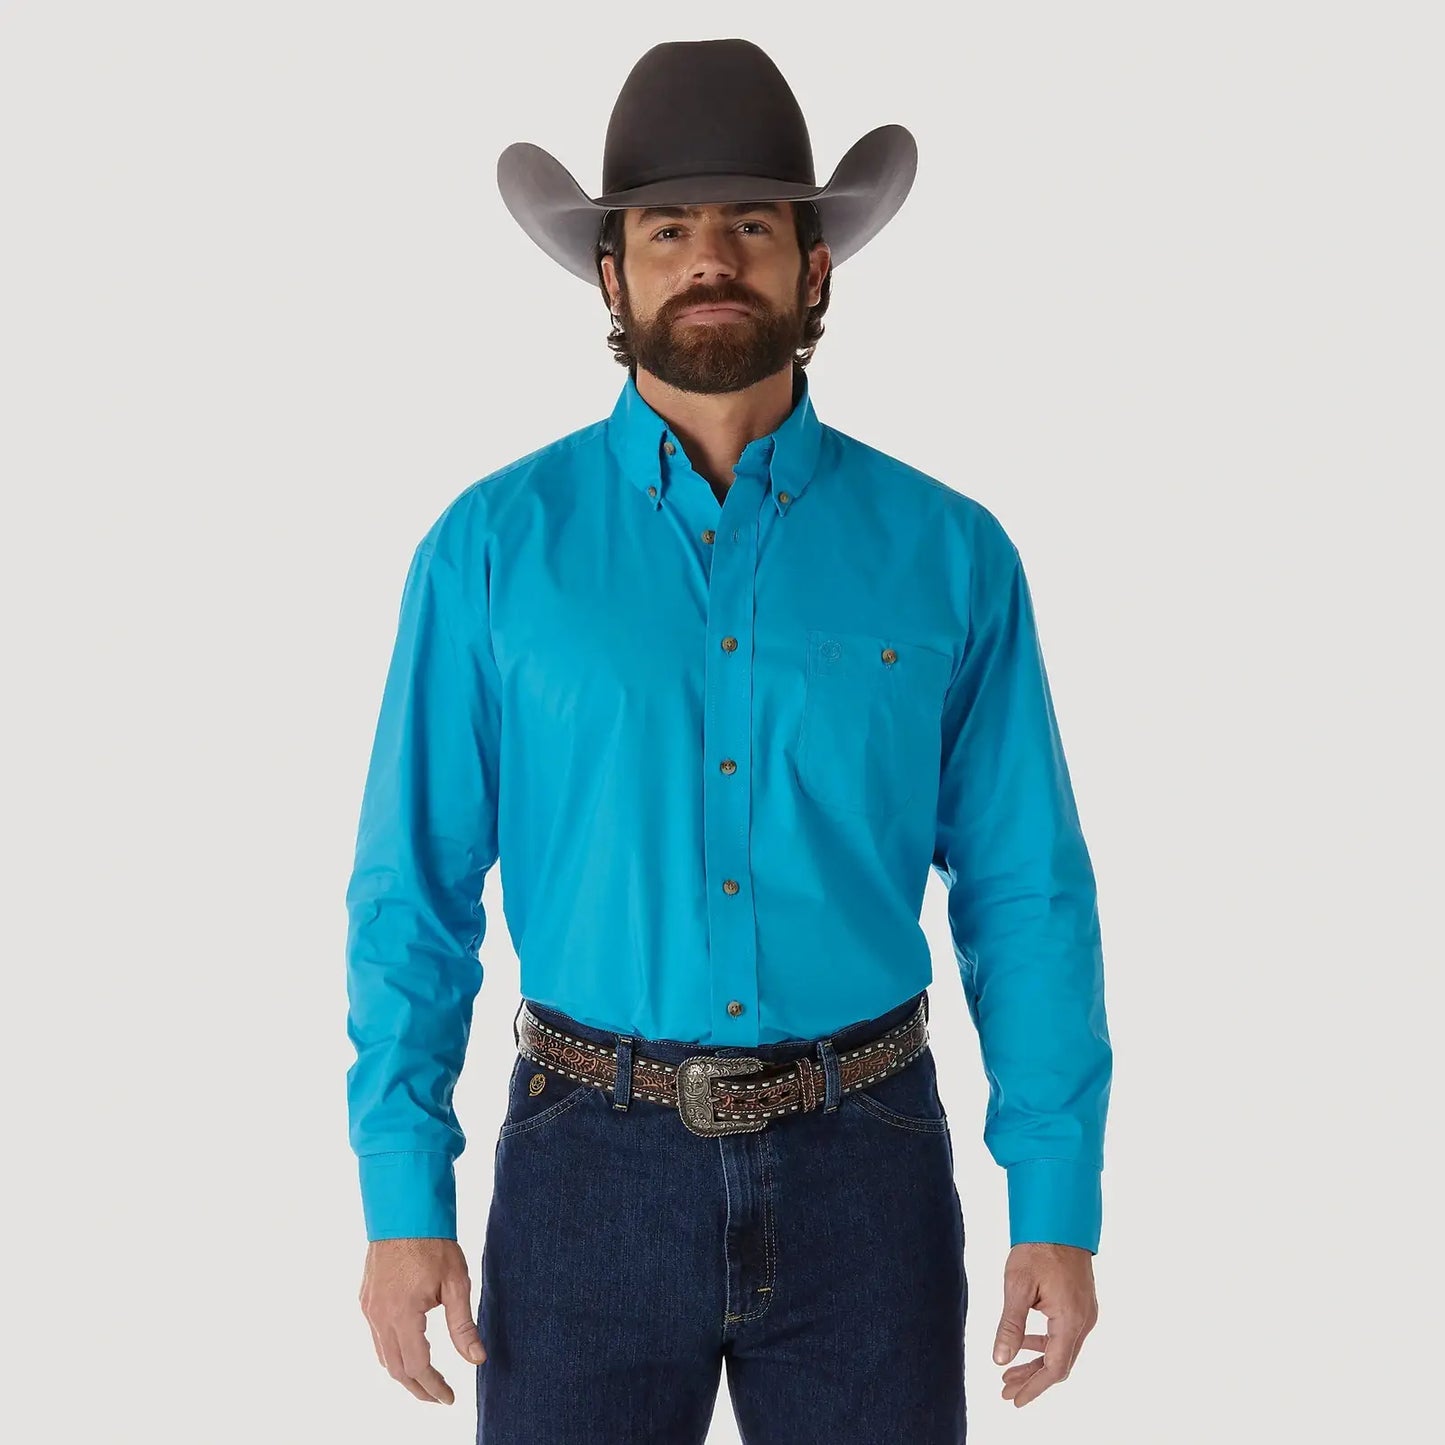 Wrangler Men’s Shirt George Strait Long Sleeve Button Down MGS272G - Wrangler